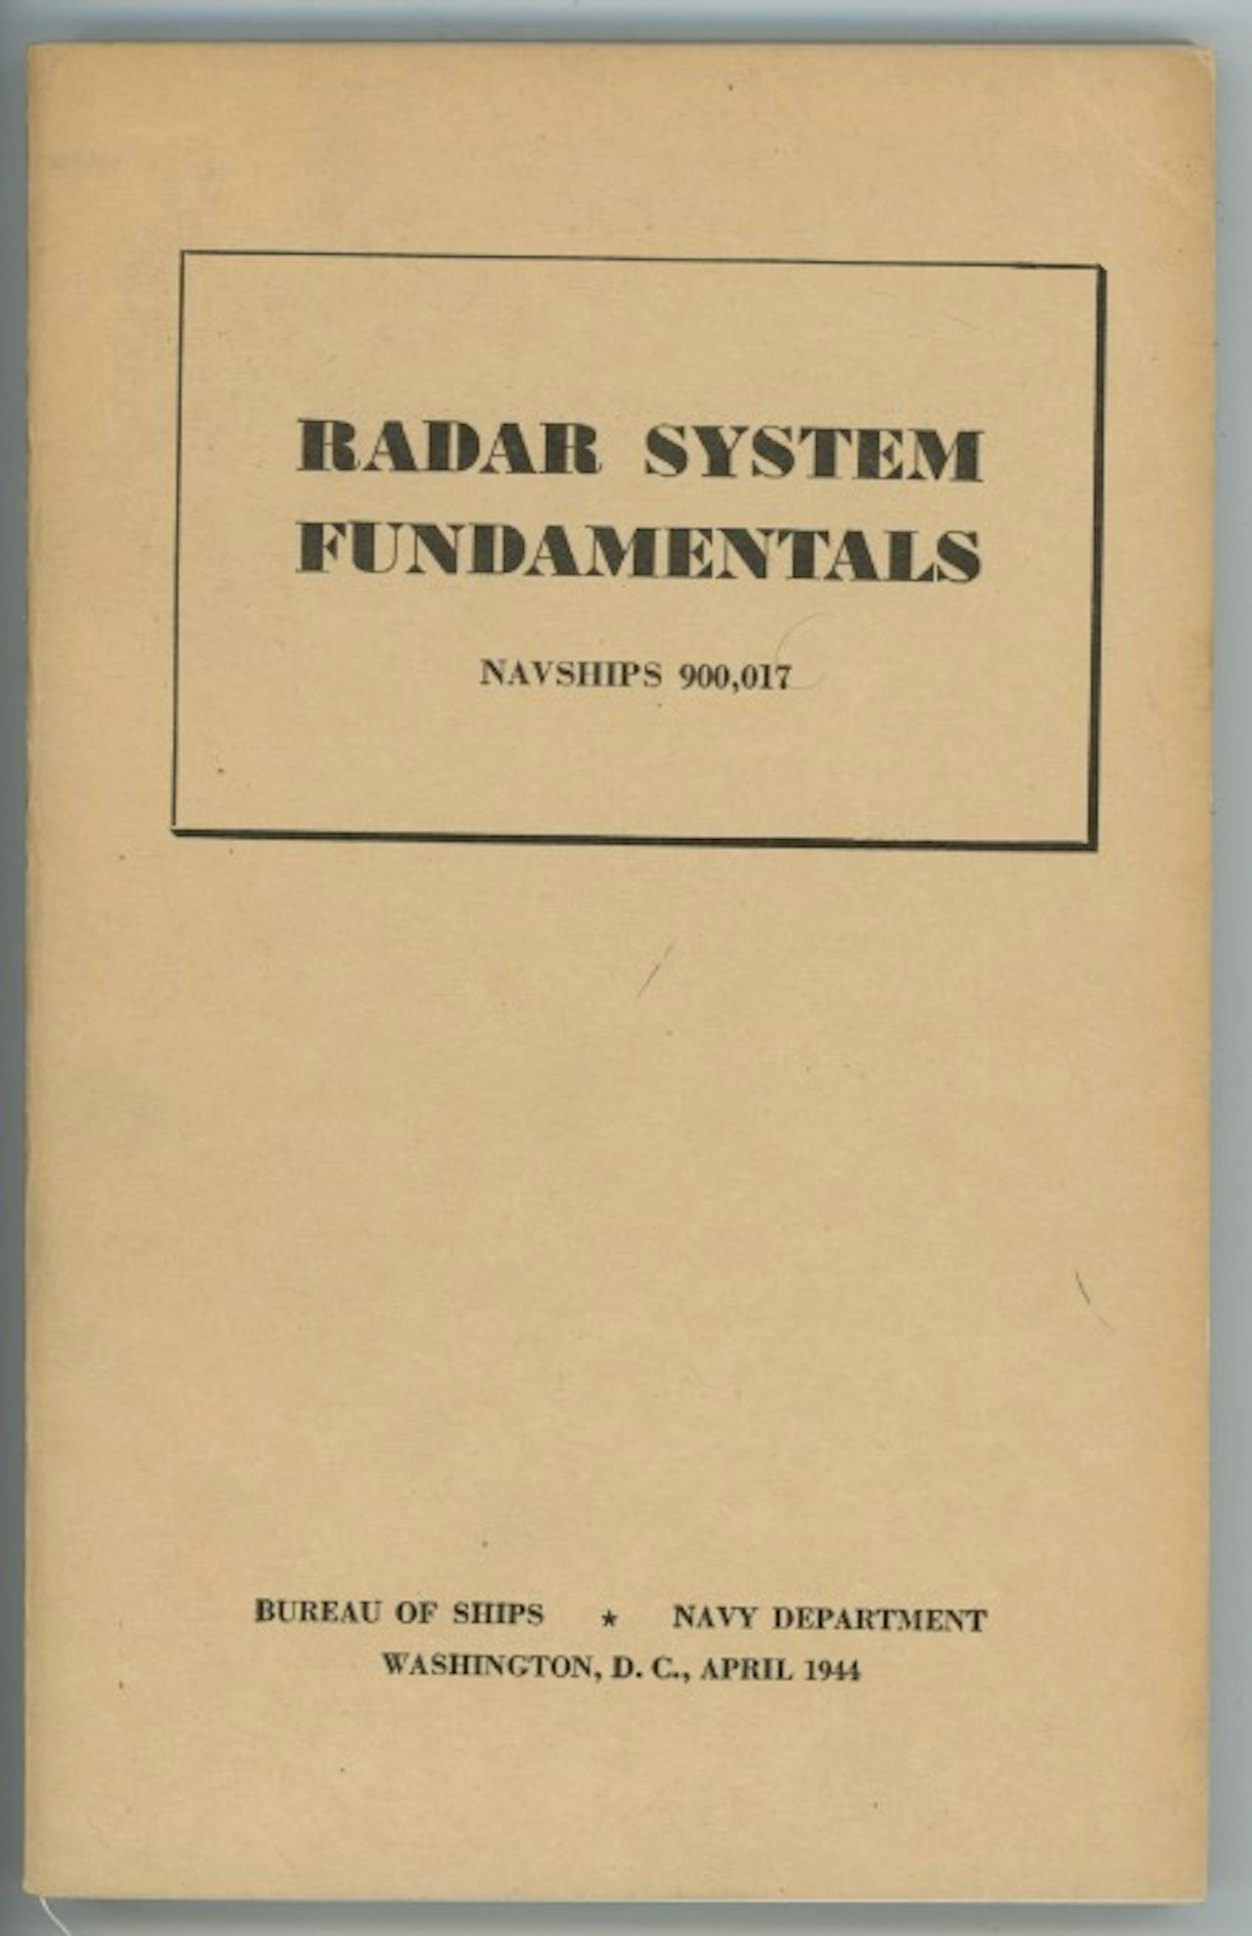 Radar System Fundamentals Navships 900,017